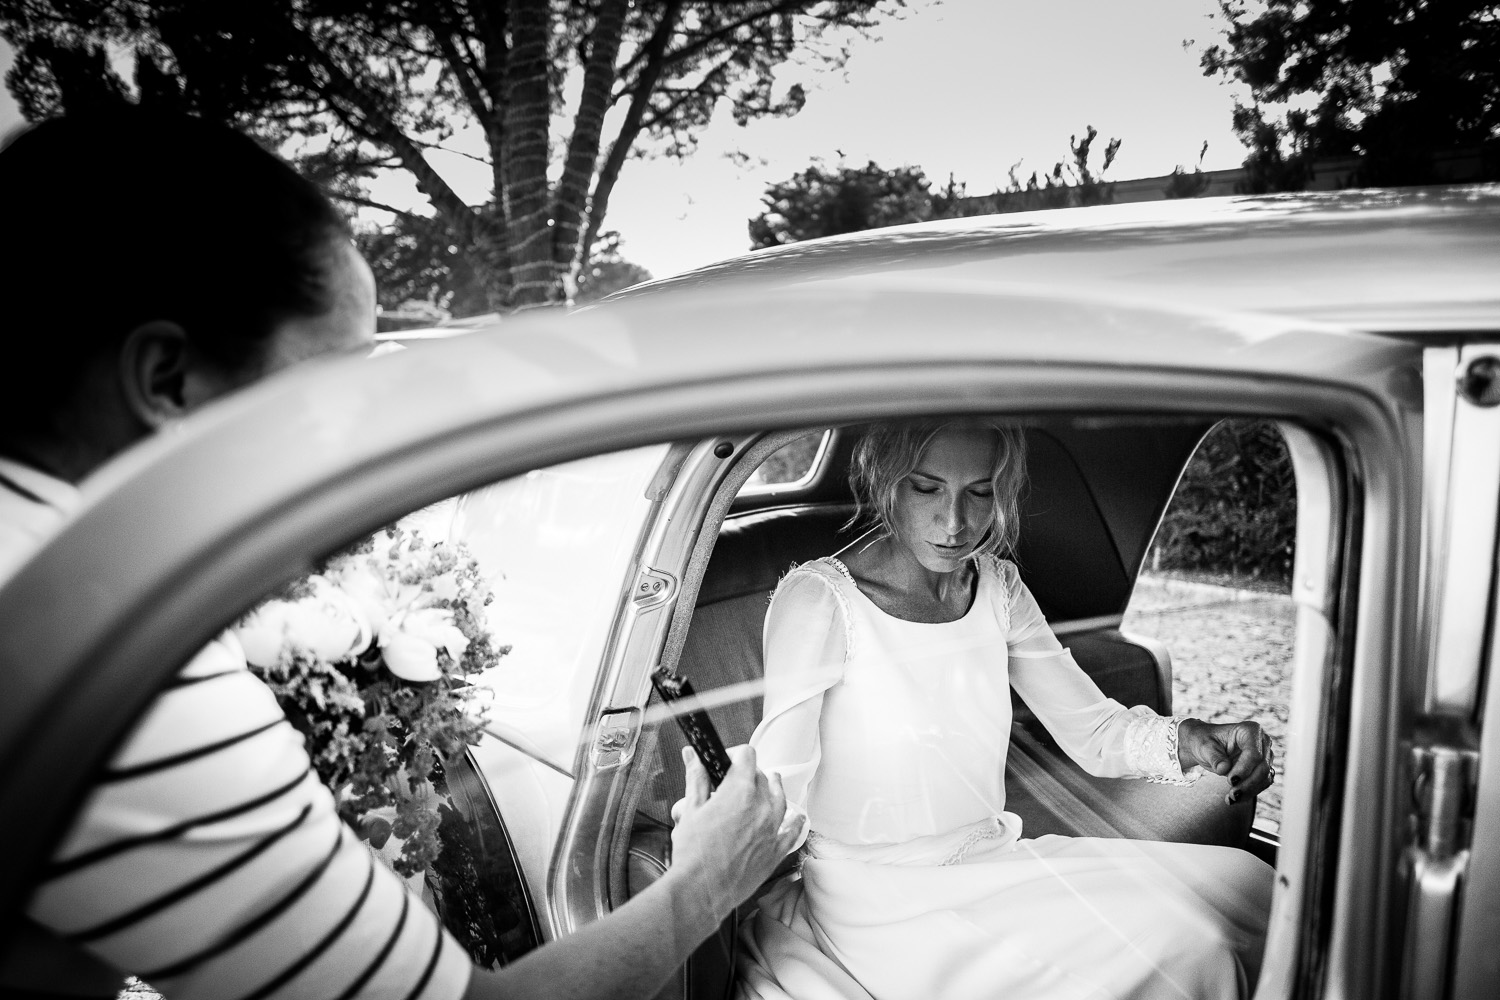  Fotografía de boda novia dentro del coche